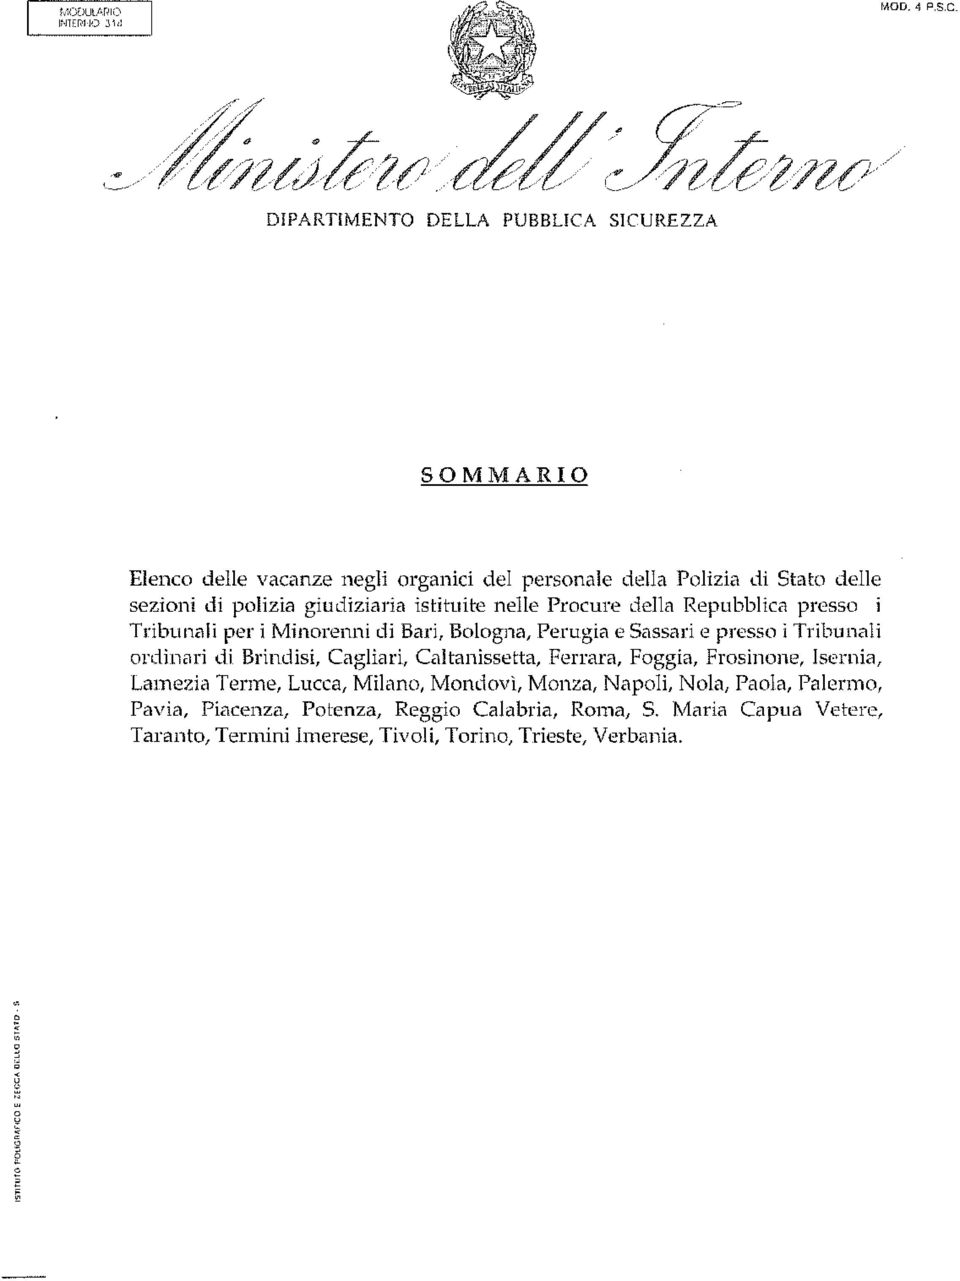 giudiziaria istituite nelle Procure della Repubblica presso i Tribunali per i Minorenni di Bari, Bologna, Perugia e Sassari e presso i Tribunali